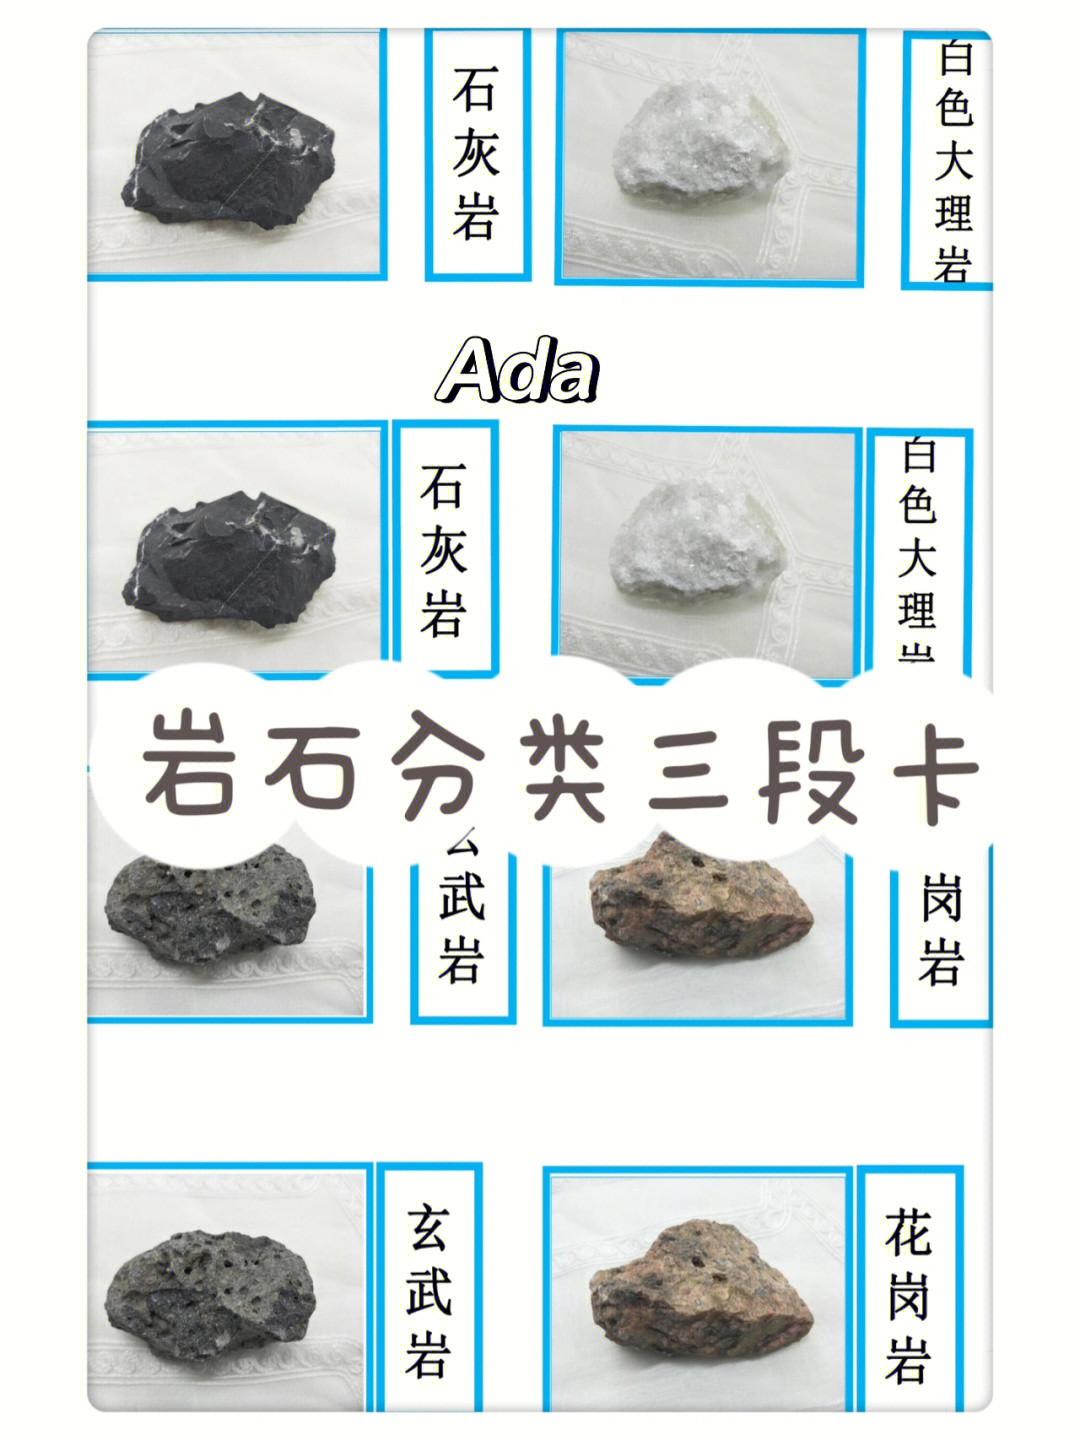 石头种类图解图片